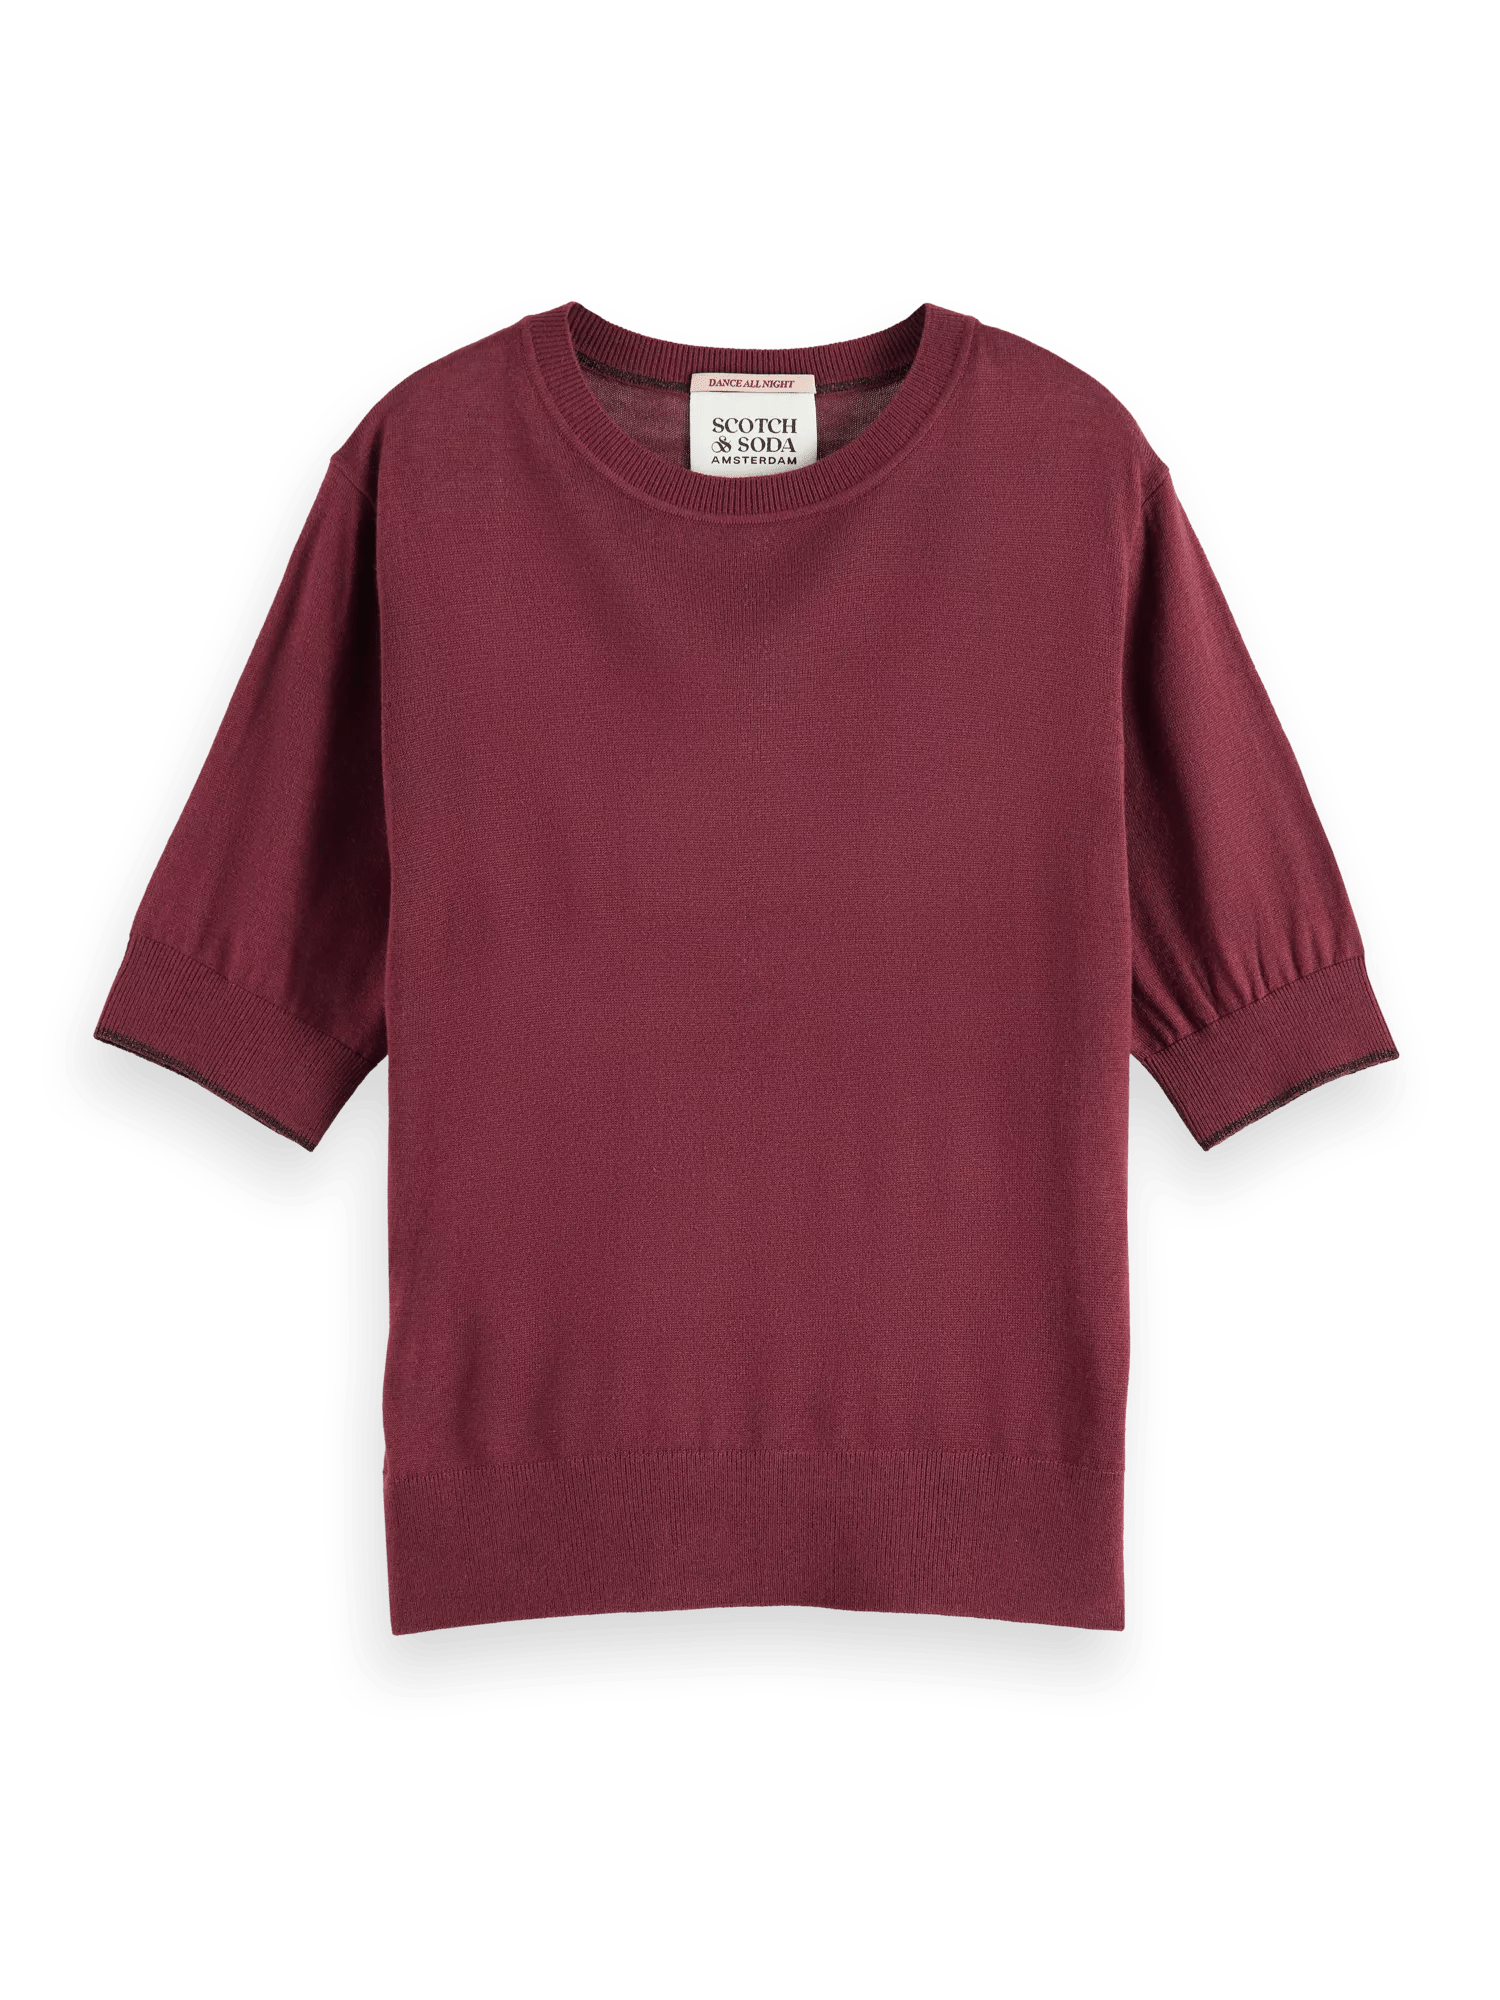 Maison Scotch - Short Sleeved Crewneck Sweater - Bordeaux